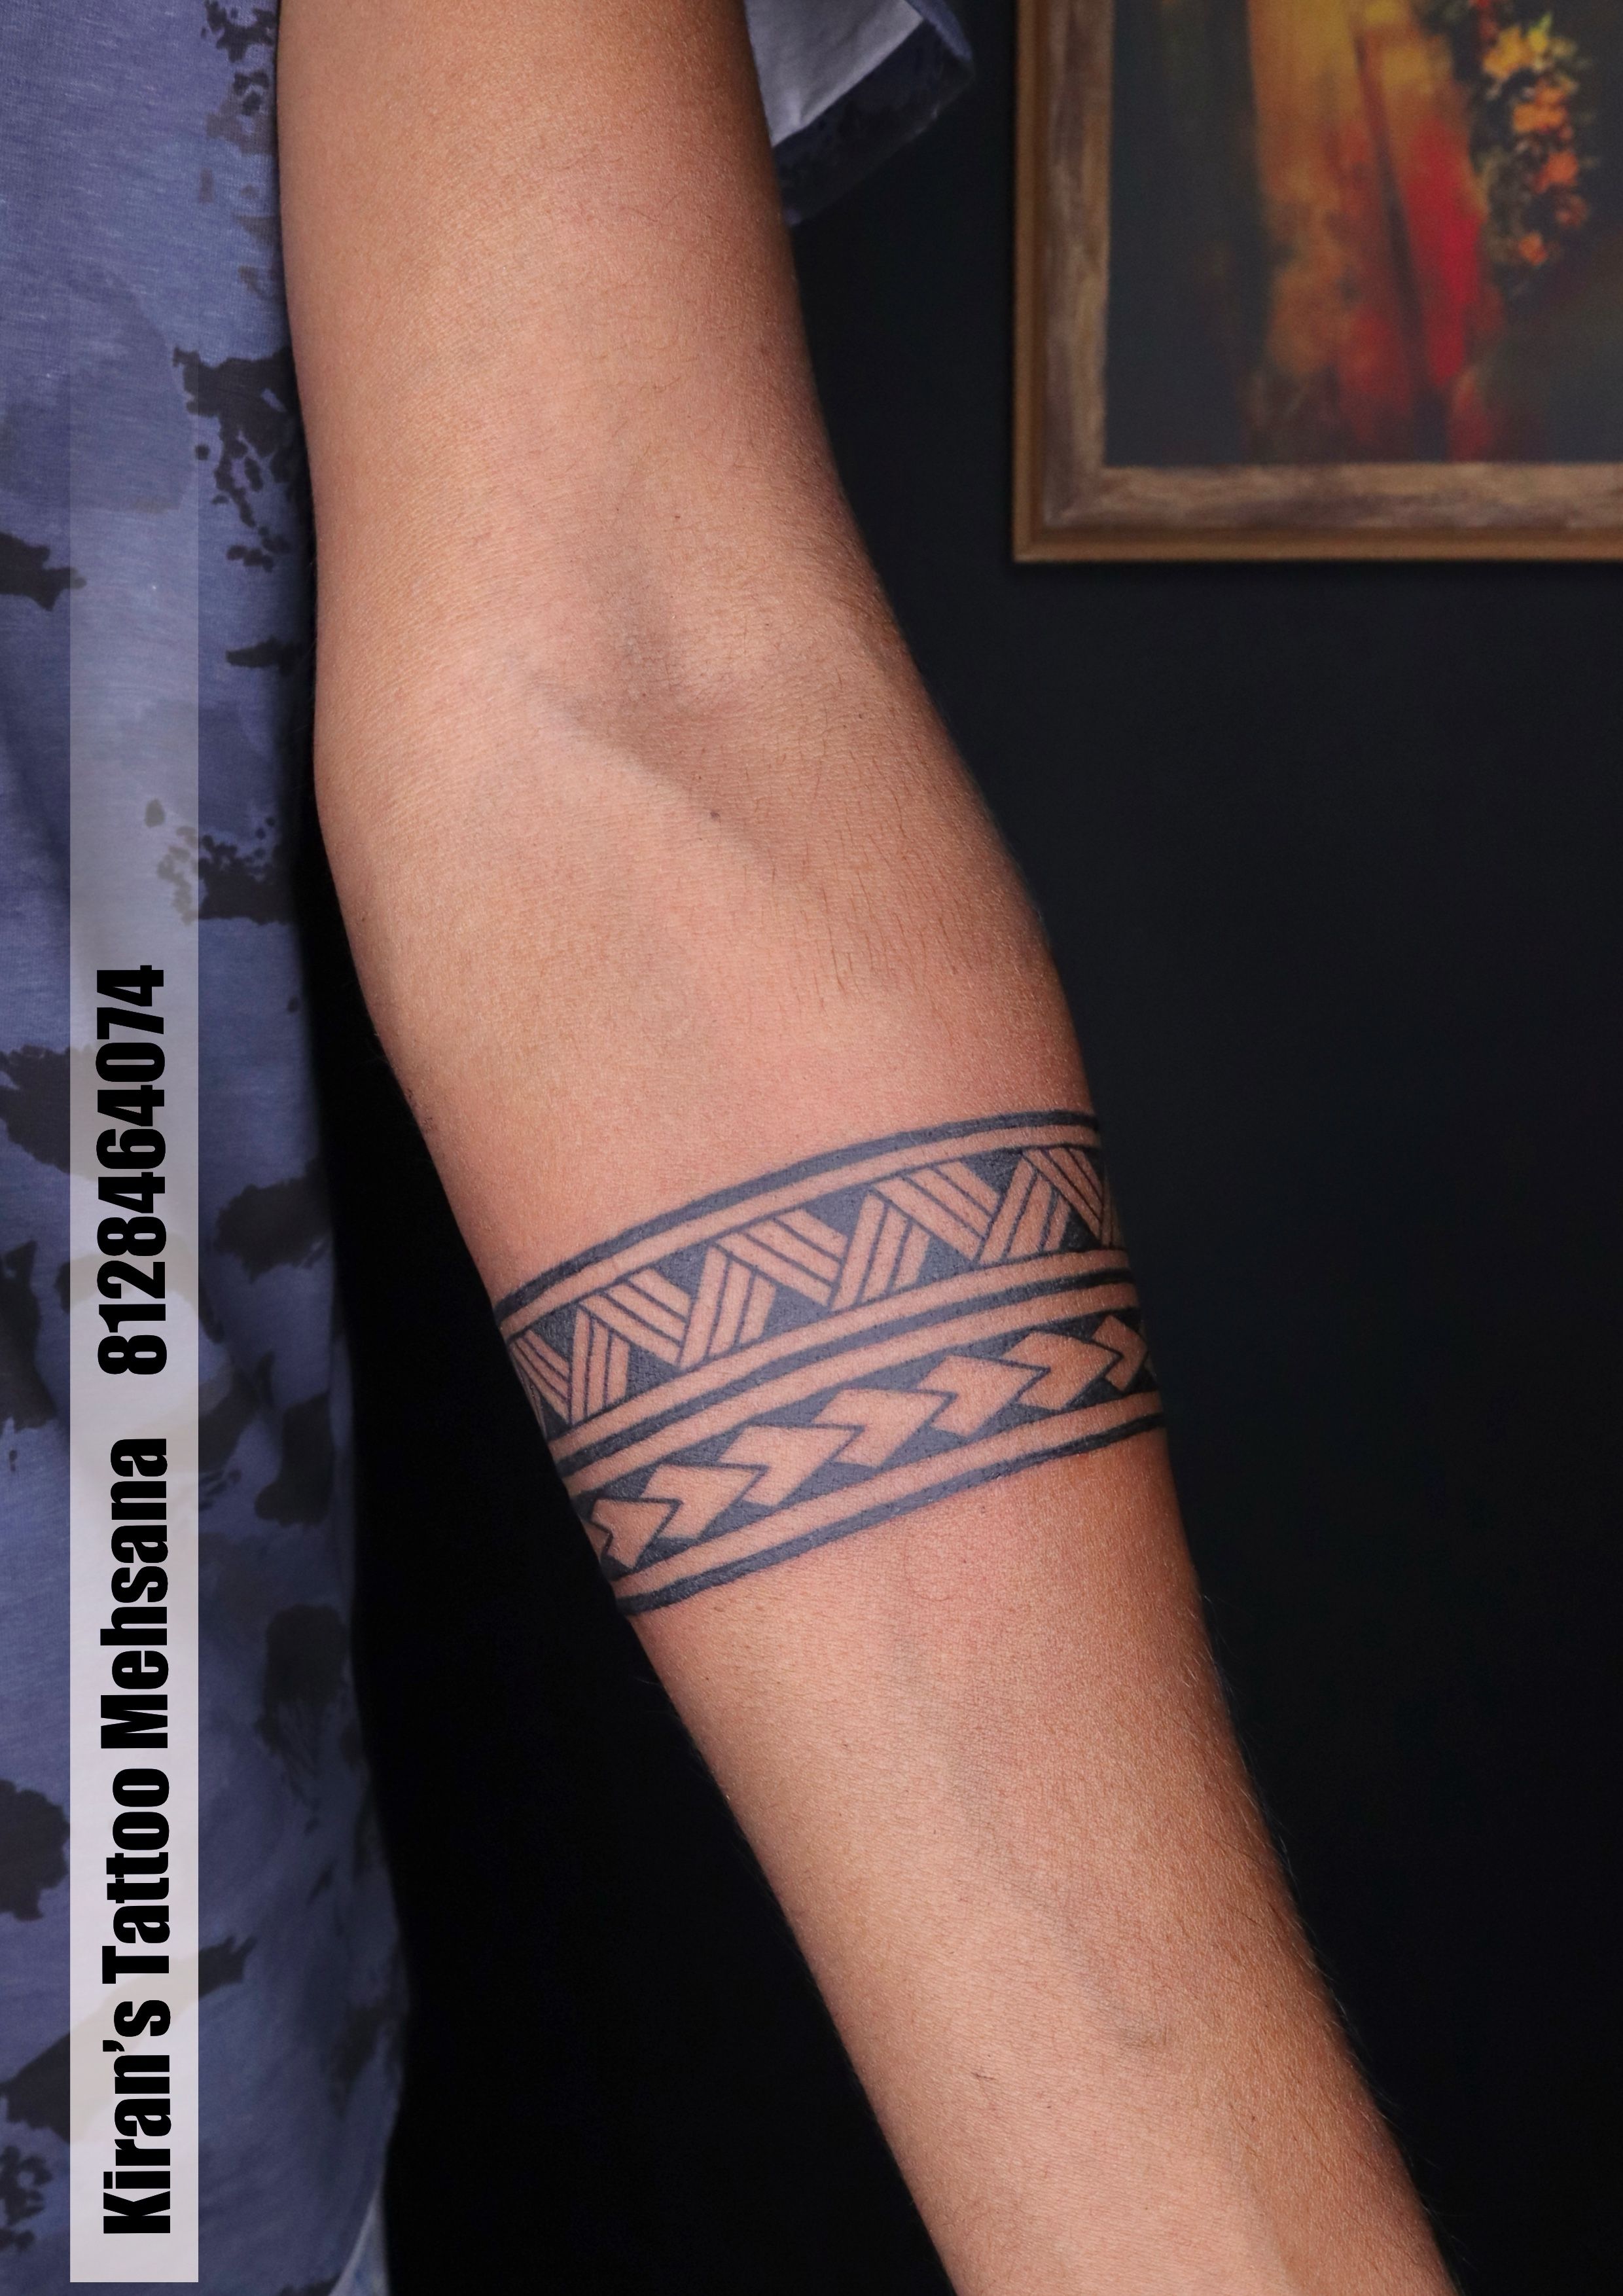 Share more than 144 arm belt tattoo best